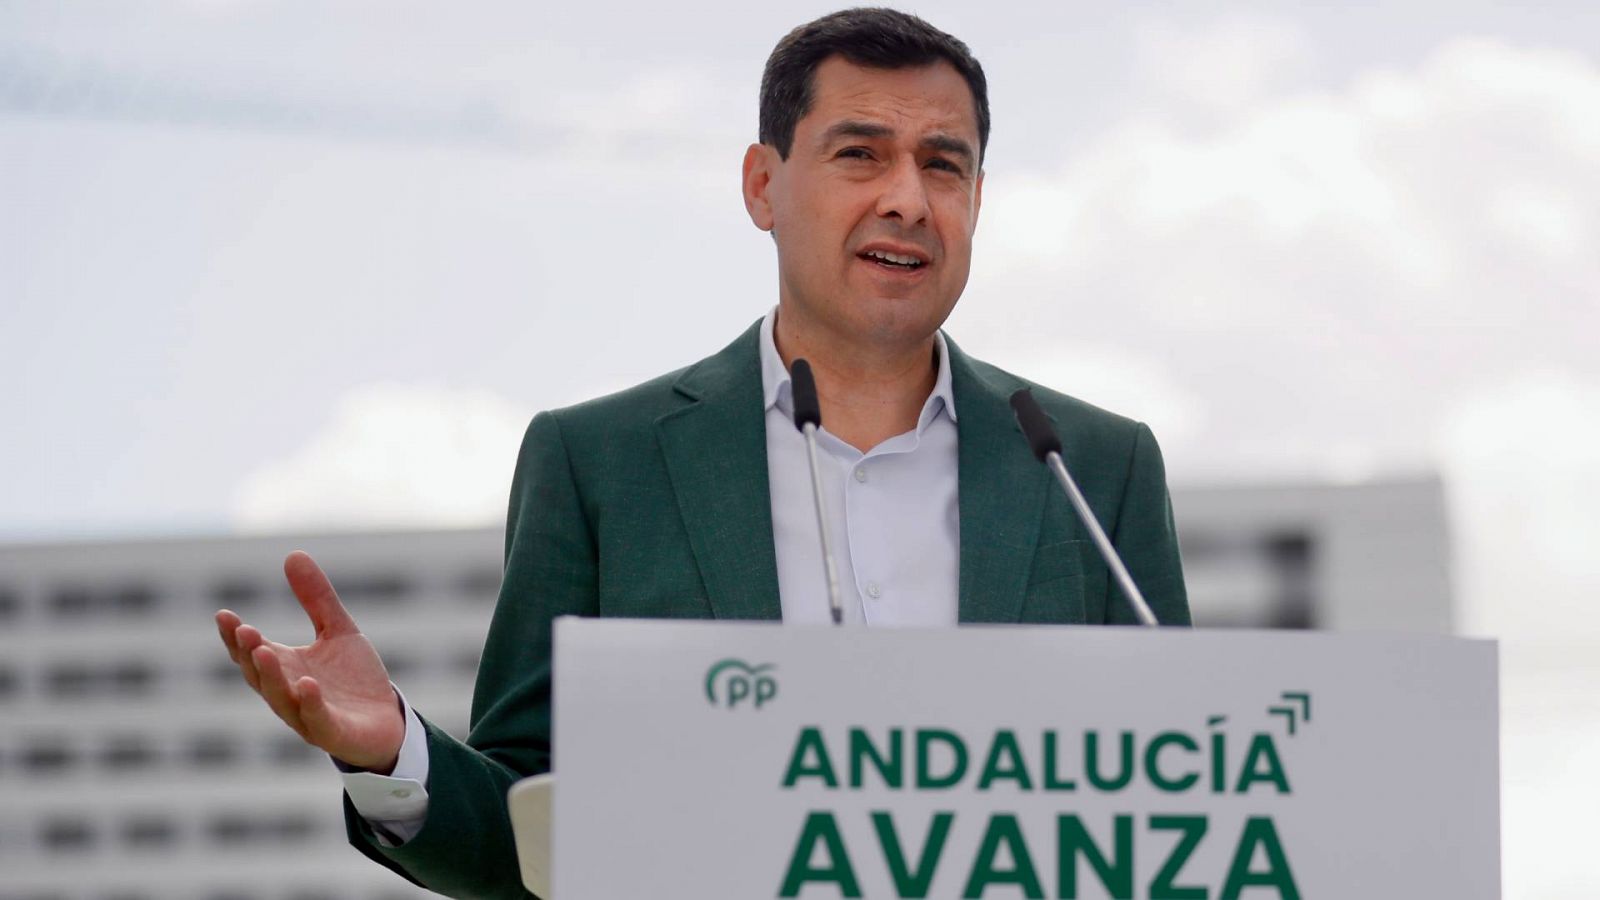 El presidente de la Junta de Andalucía y candidato del PP a la reelección, Juanma Moreno, durante su intervención en un acto de campaña en Sevilla